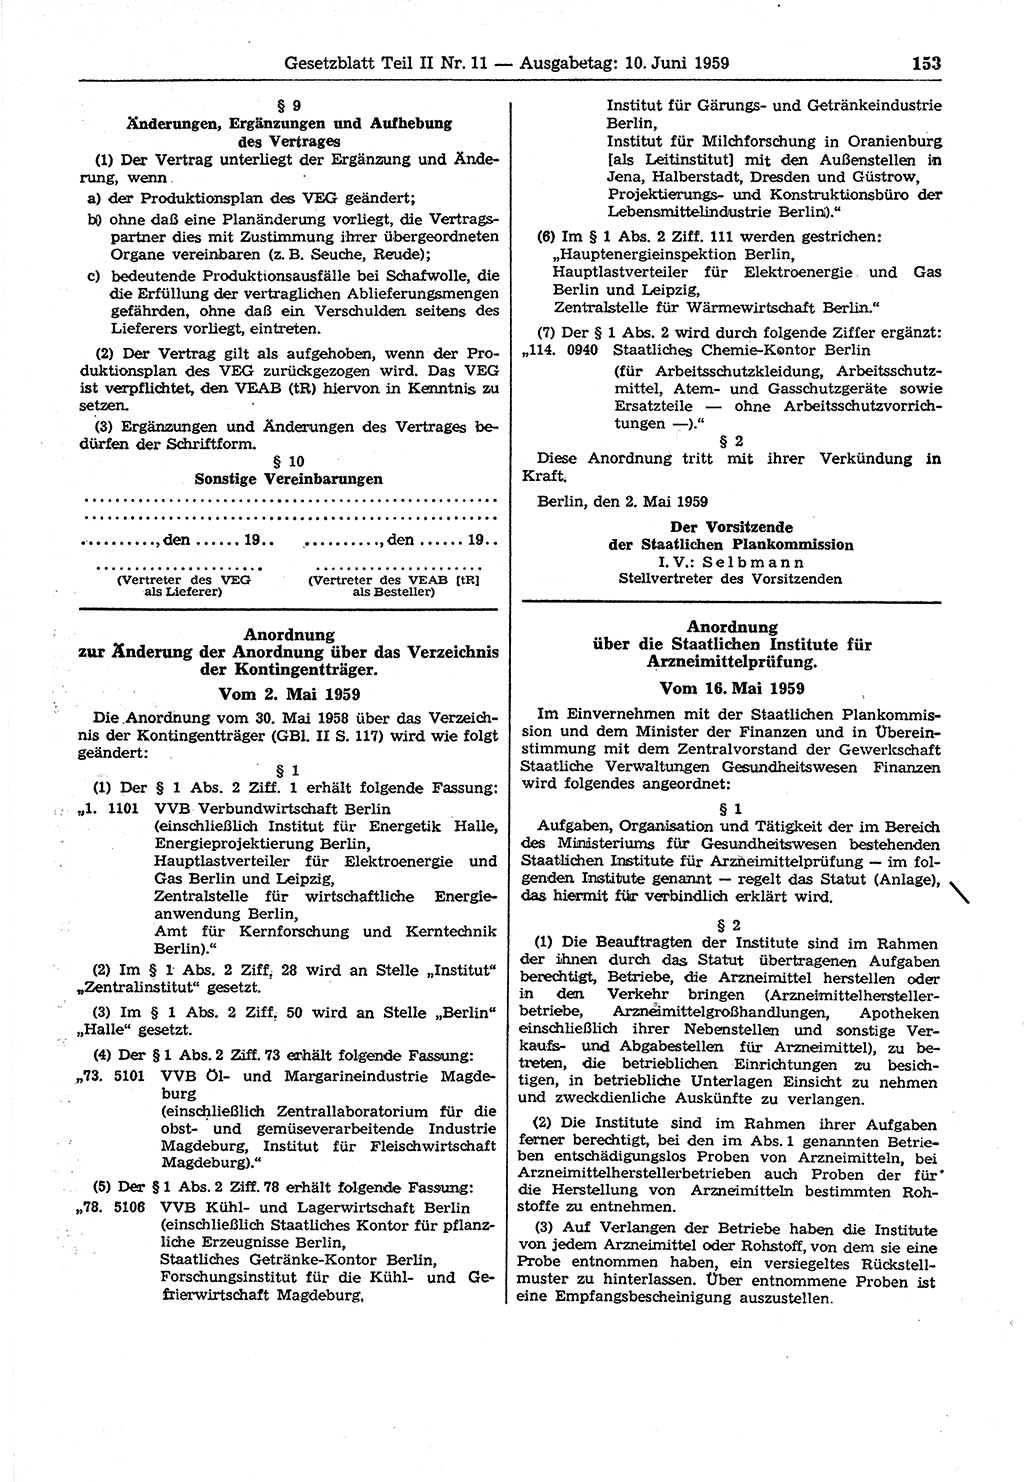 Gesetzblatt (GBl.) der Deutschen Demokratischen Republik (DDR) Teil ⅠⅠ 1959, Seite 153 (GBl. DDR ⅠⅠ 1959, S. 153)